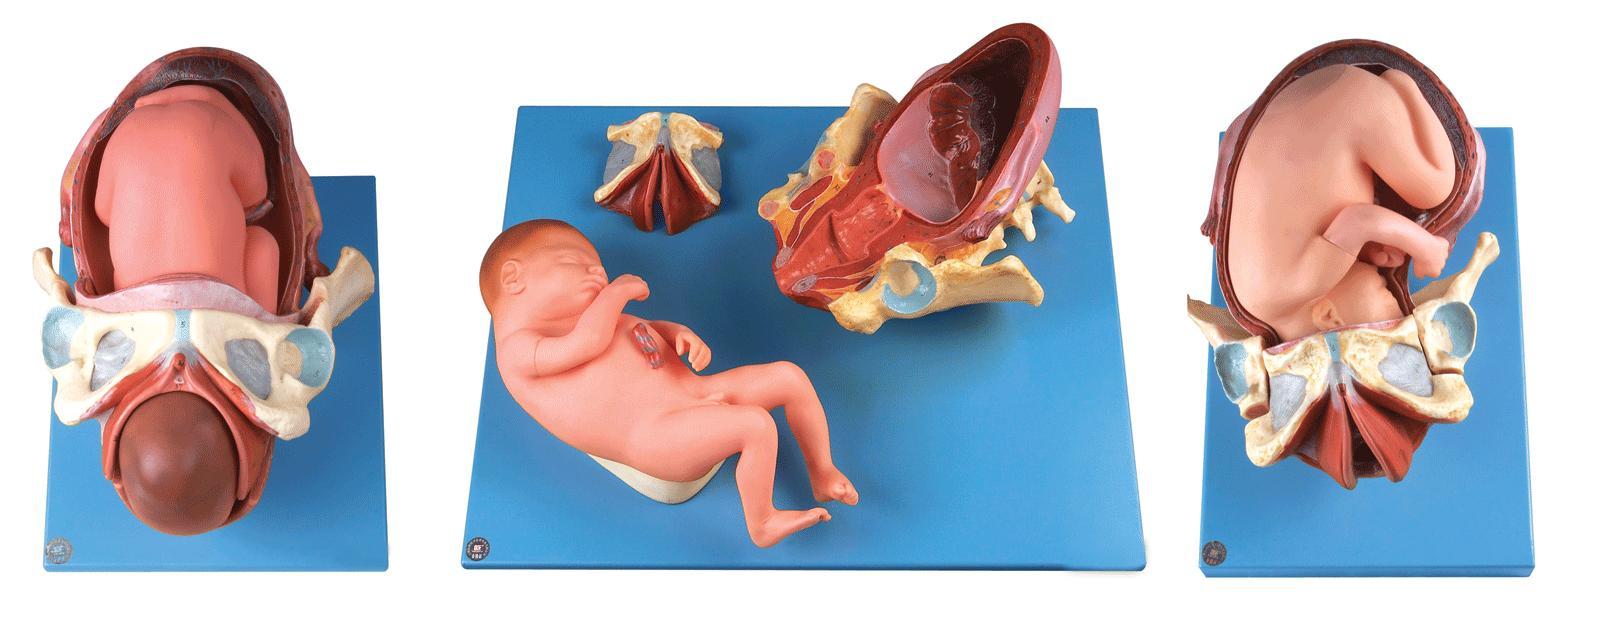 足月胎儿分娩过程模型A42007-上海佳悦公司:021-63283651 中国领先的医学教学模型设备制造厂家